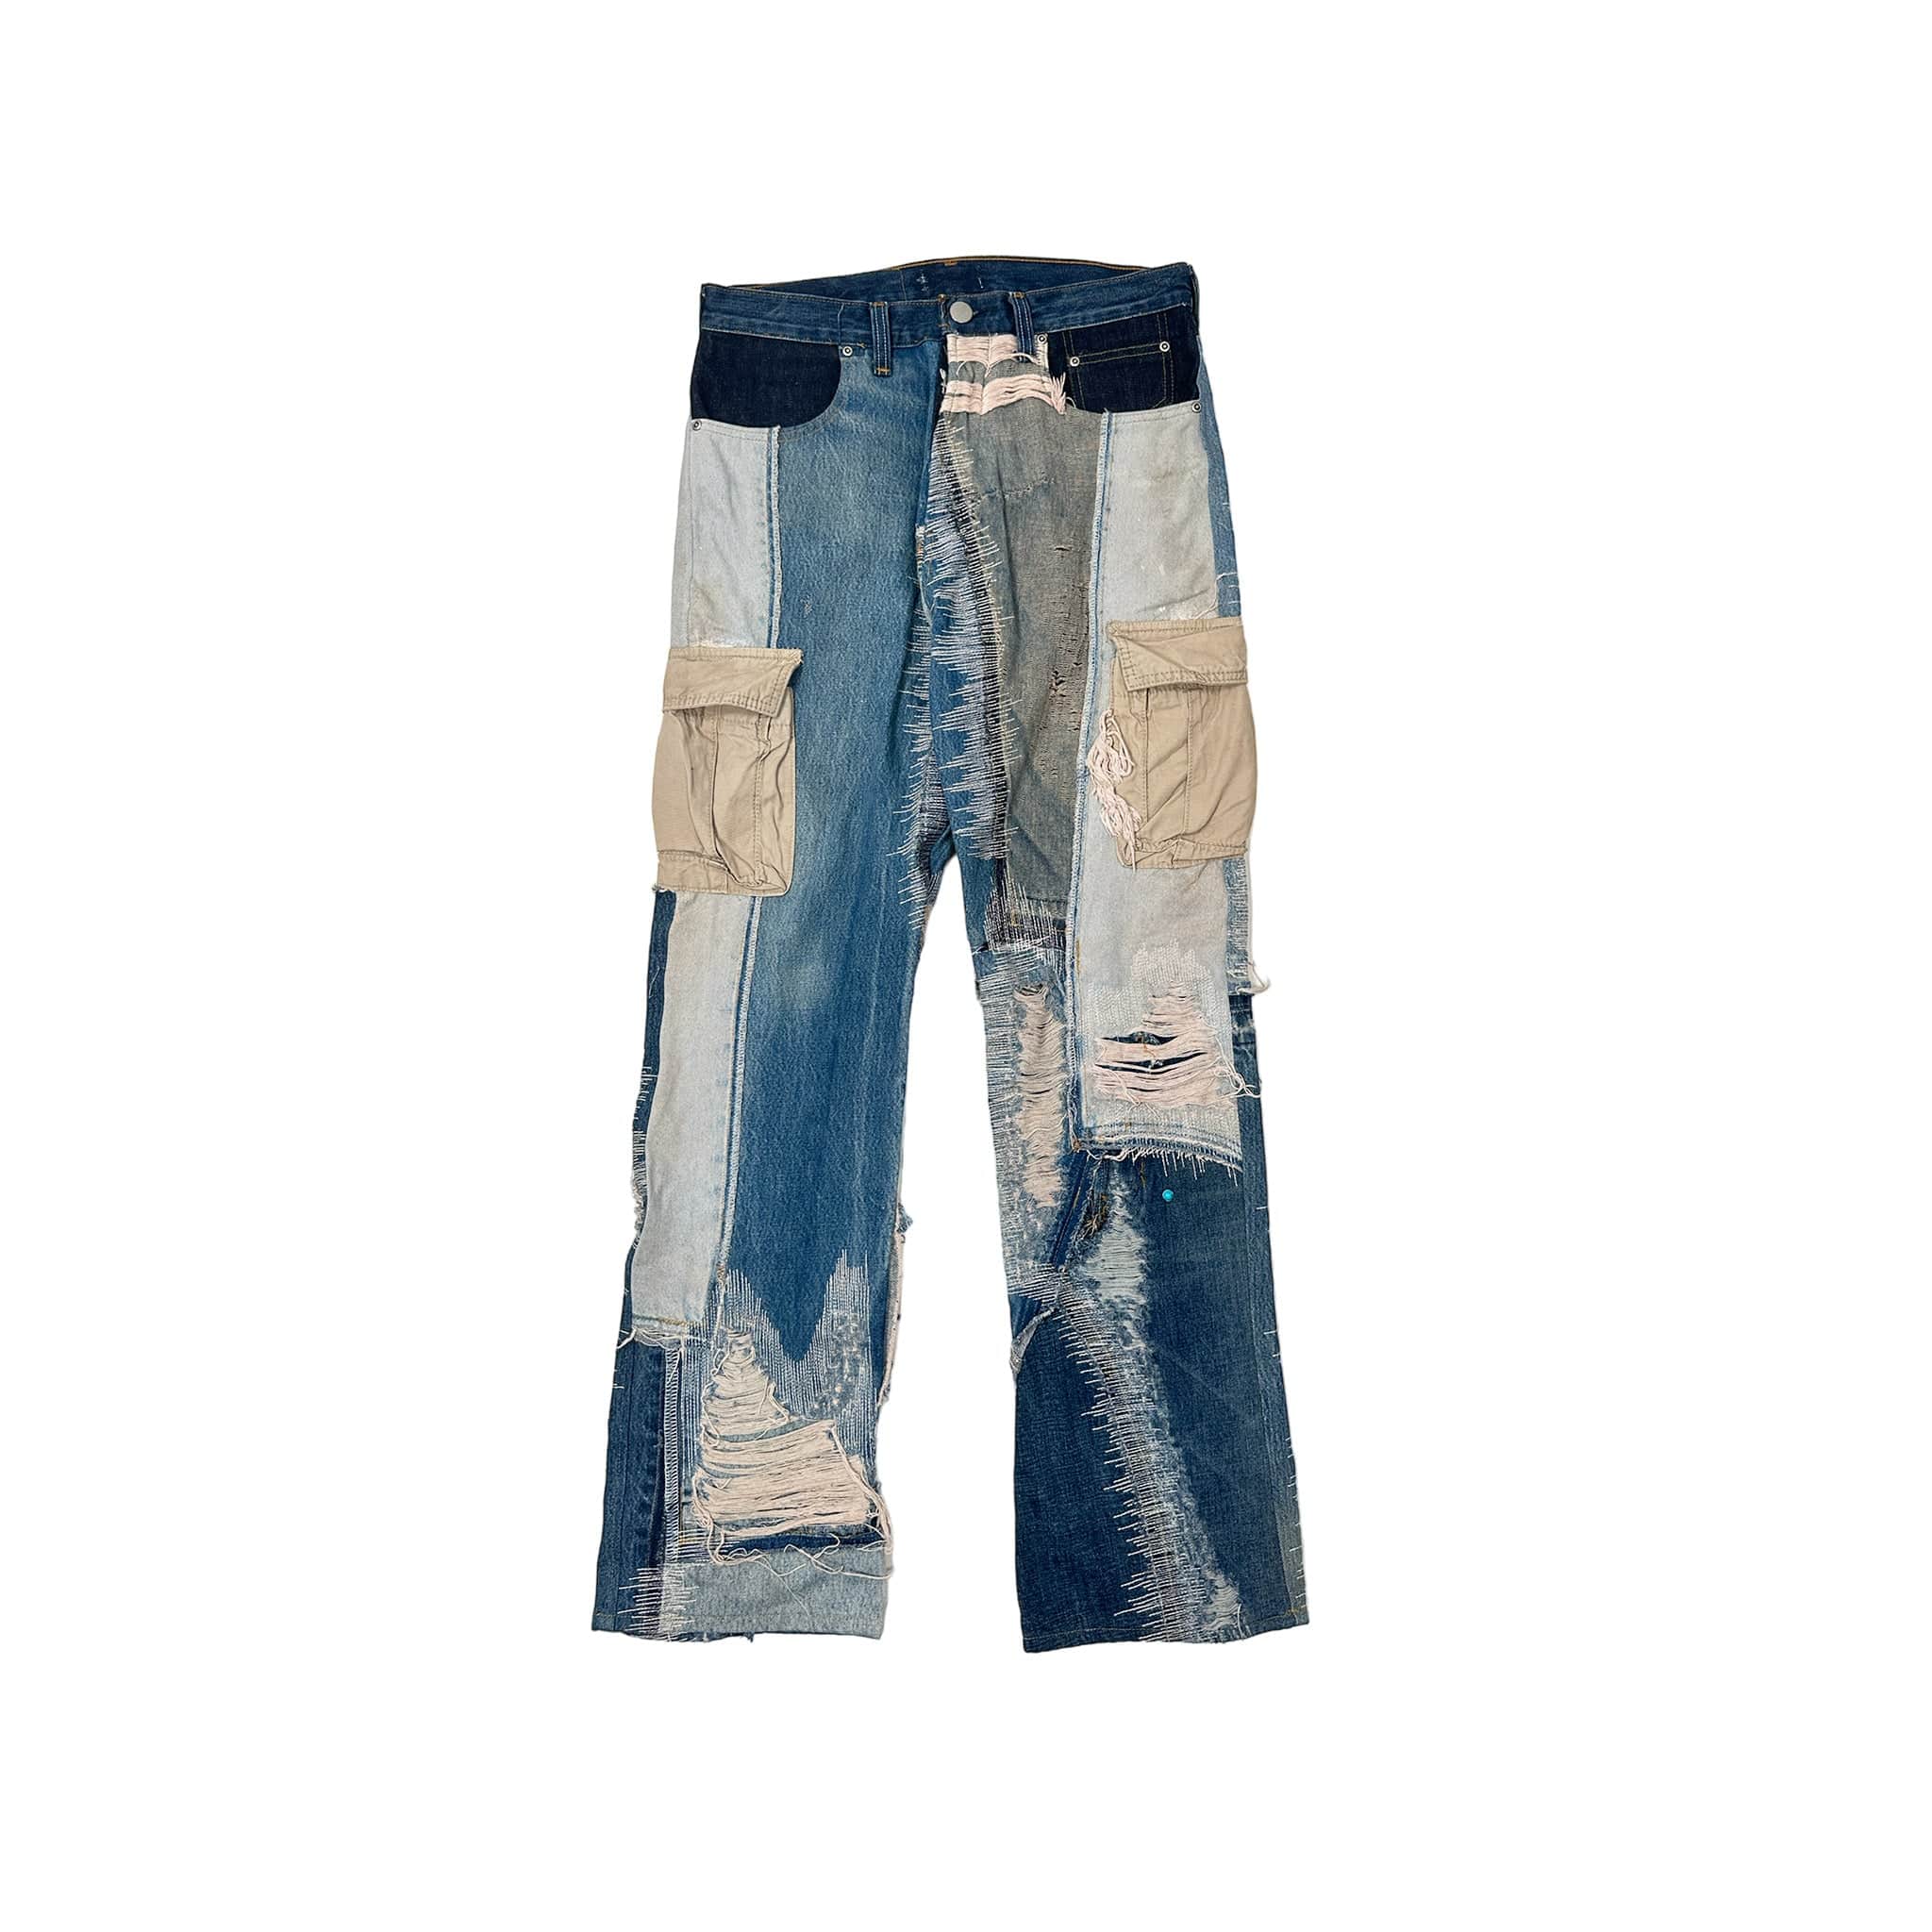 Ghetto Friends 10 Cargo Jeans Light Indigo – Origins NYC